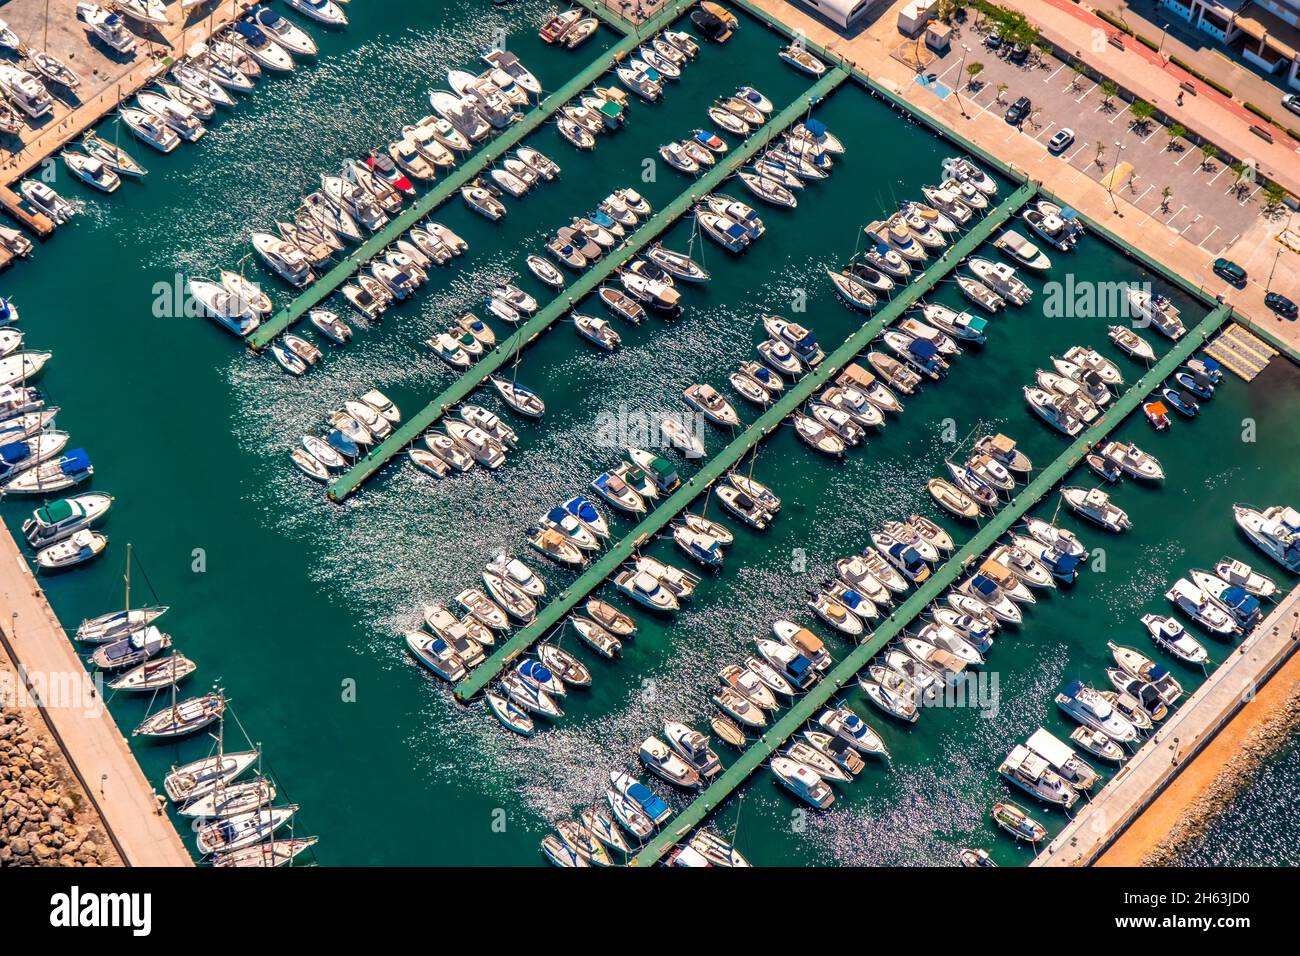 vista aerea, porto turistico porto esportu de can picafort, santa margalida, maiorca, isole baleari, spagna Foto Stock